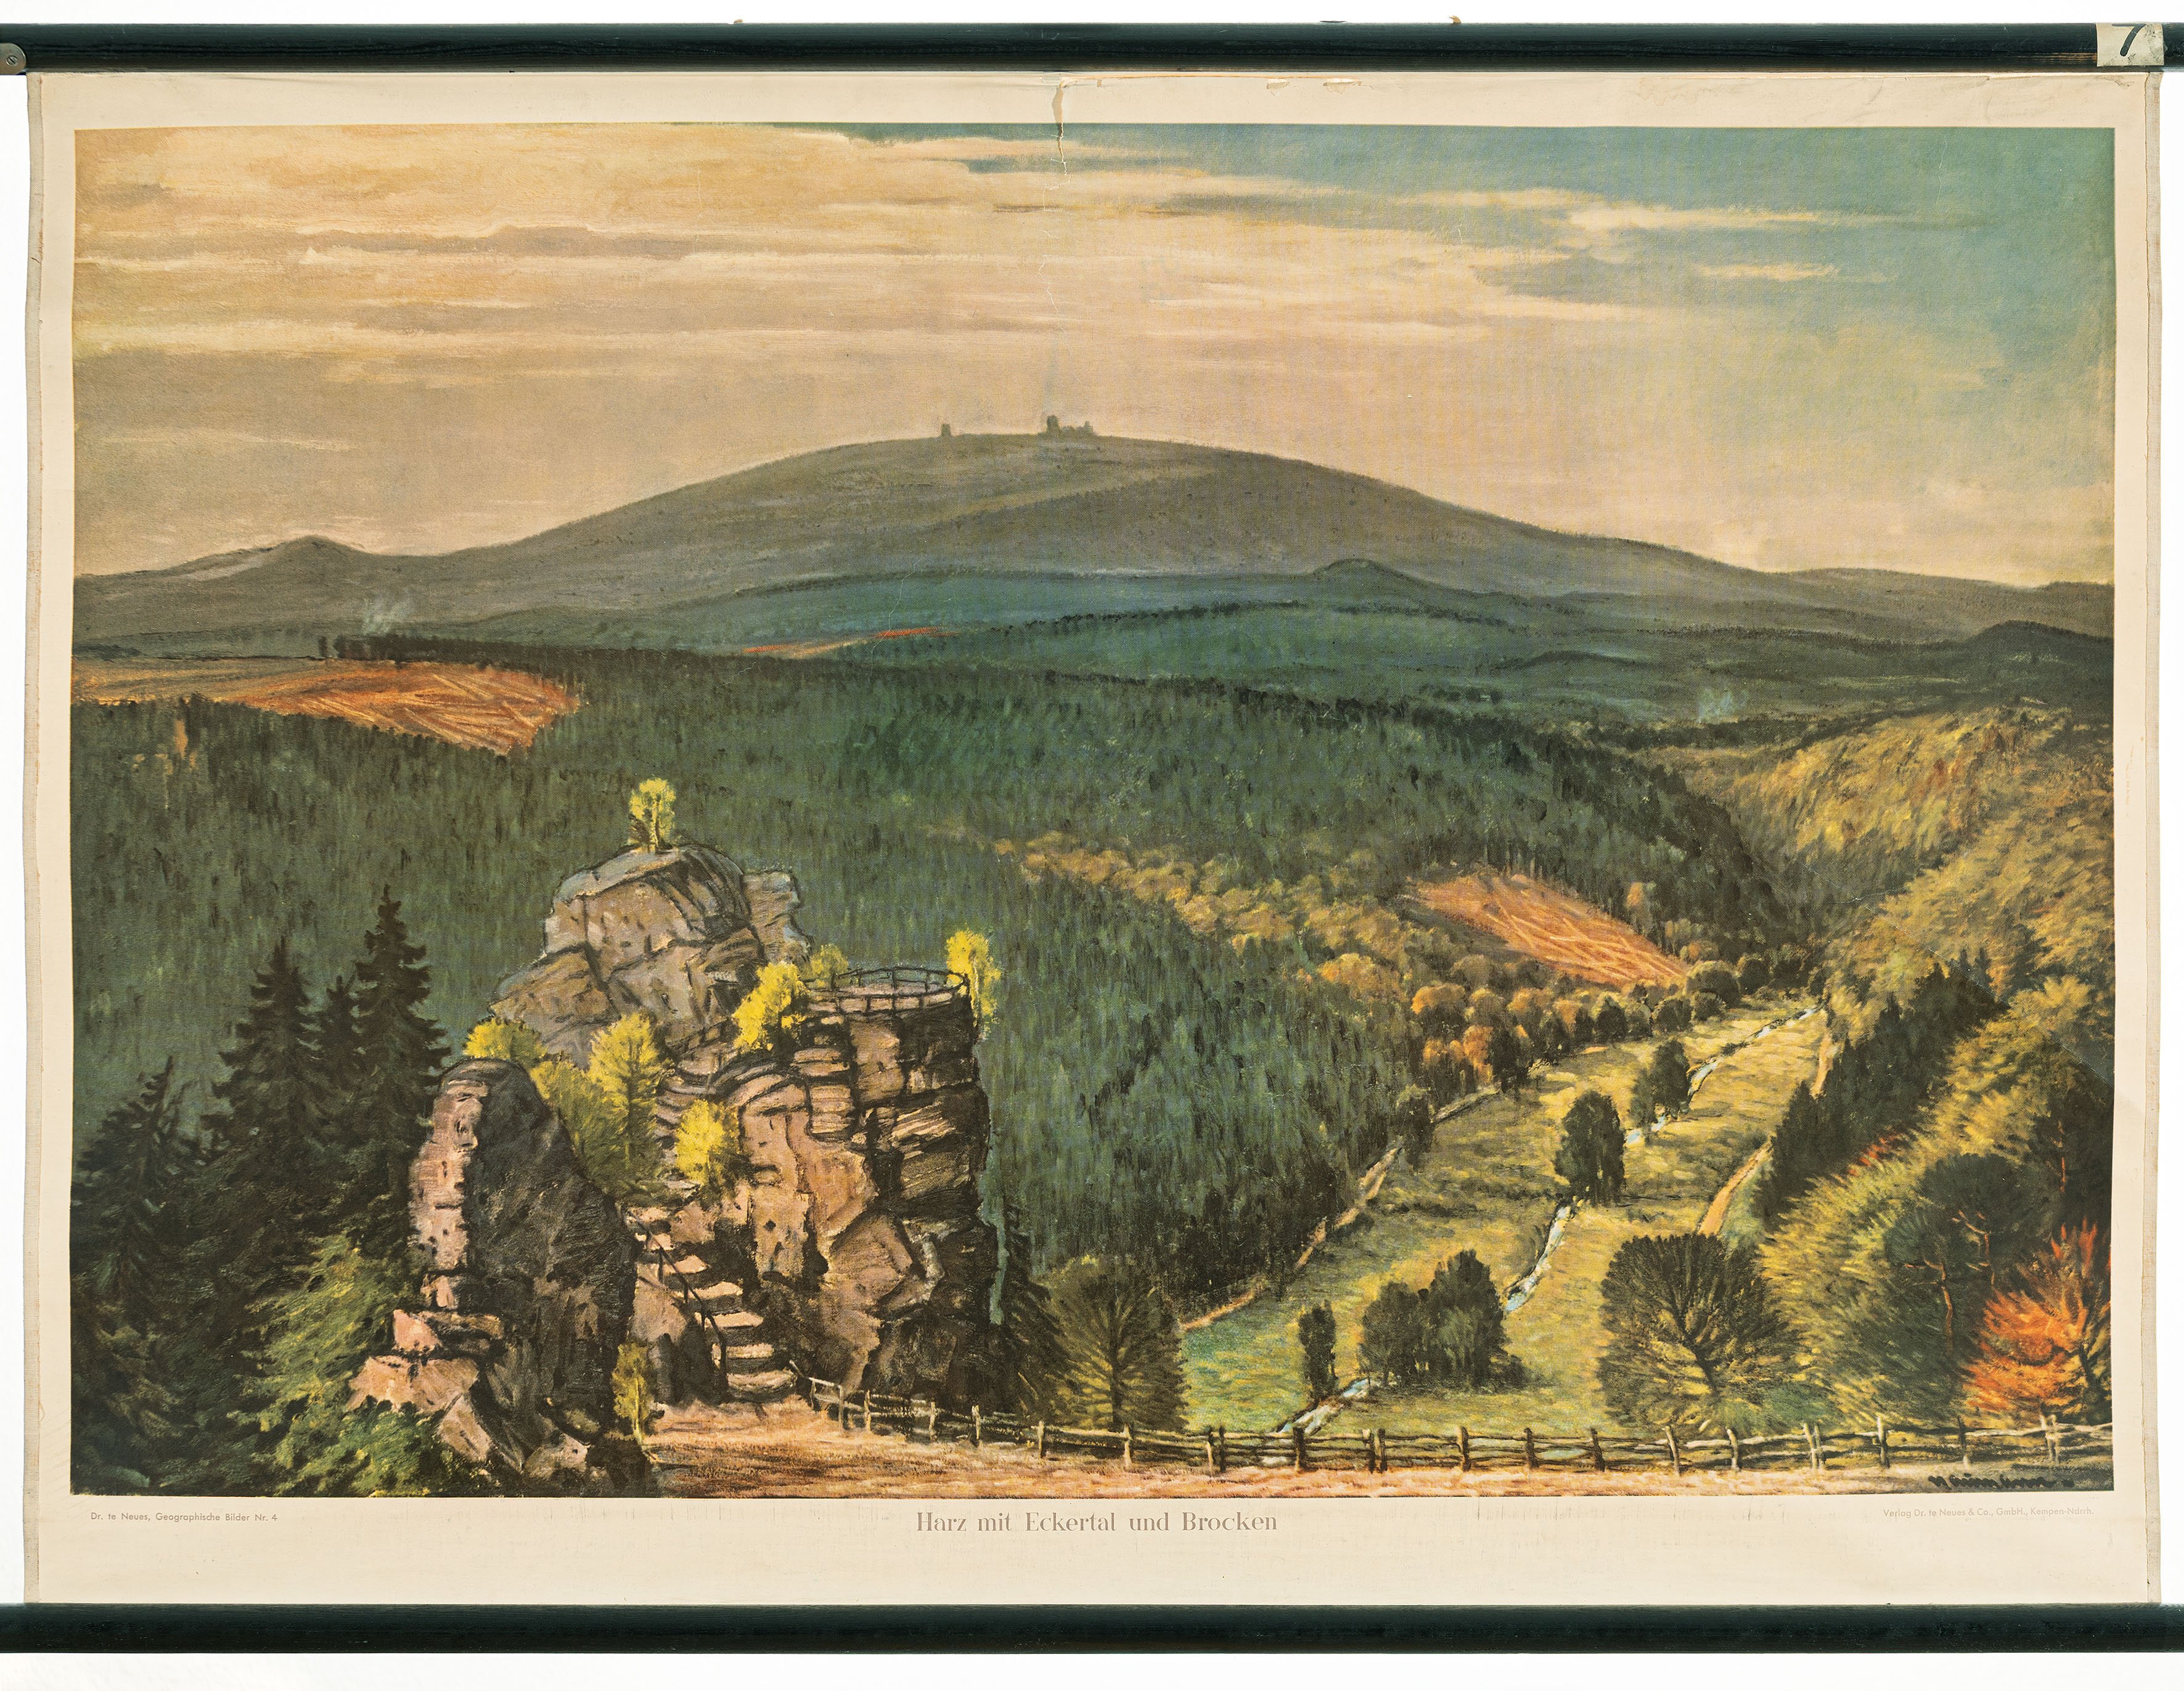 Schulwandbild "Harz mit Eckertal und Brocken" (Mitte Museum/Bezirksamt Mitte von Berlin CC BY-NC-ND)